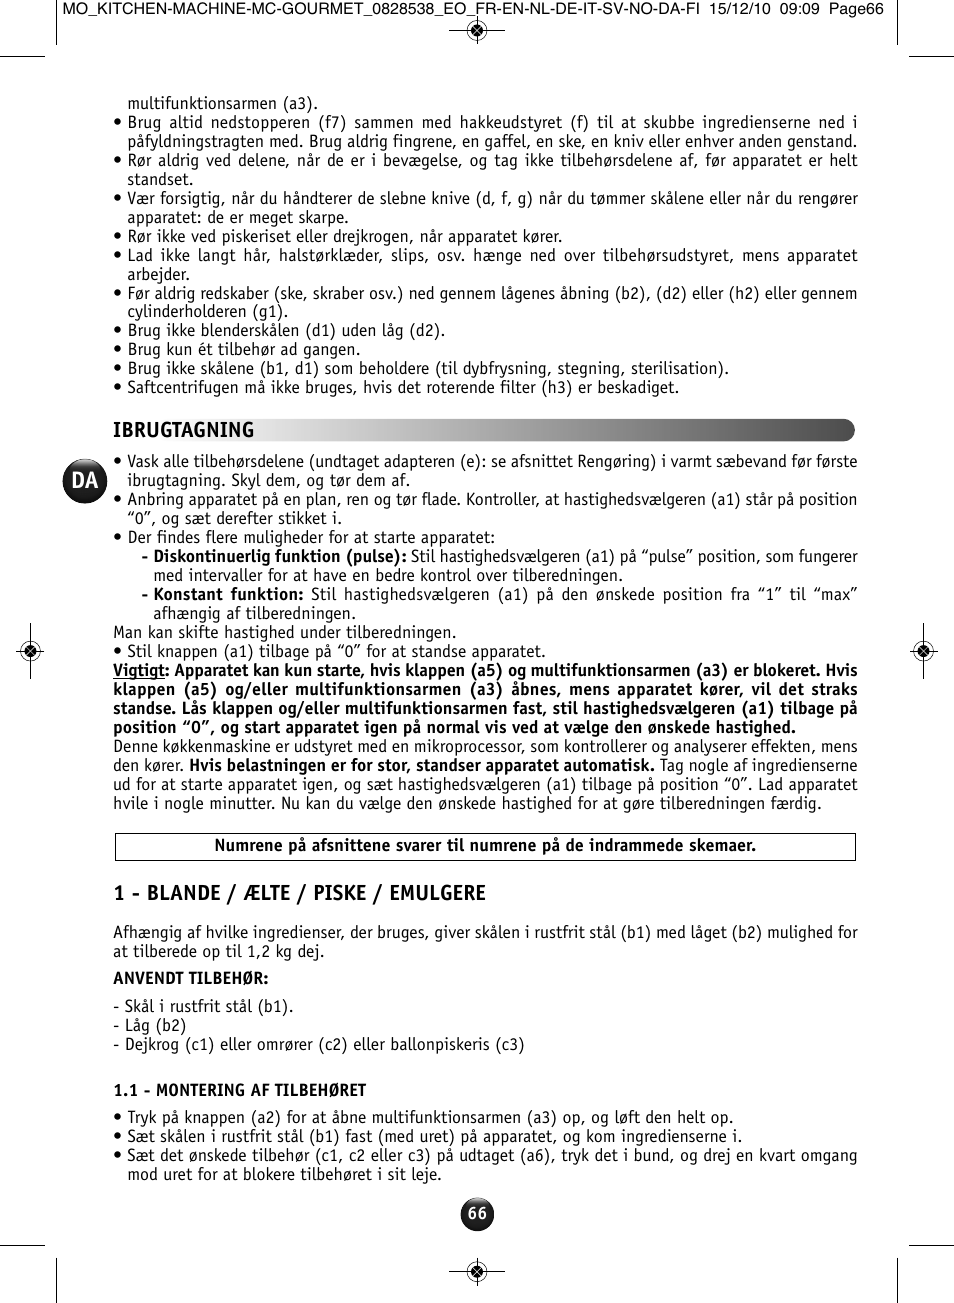 1 - blande ælte / piske emulgere, Ibrugtagning | Moulinex MASTERCHEF GOURMET QA402G User Manual | Page 62 / 82